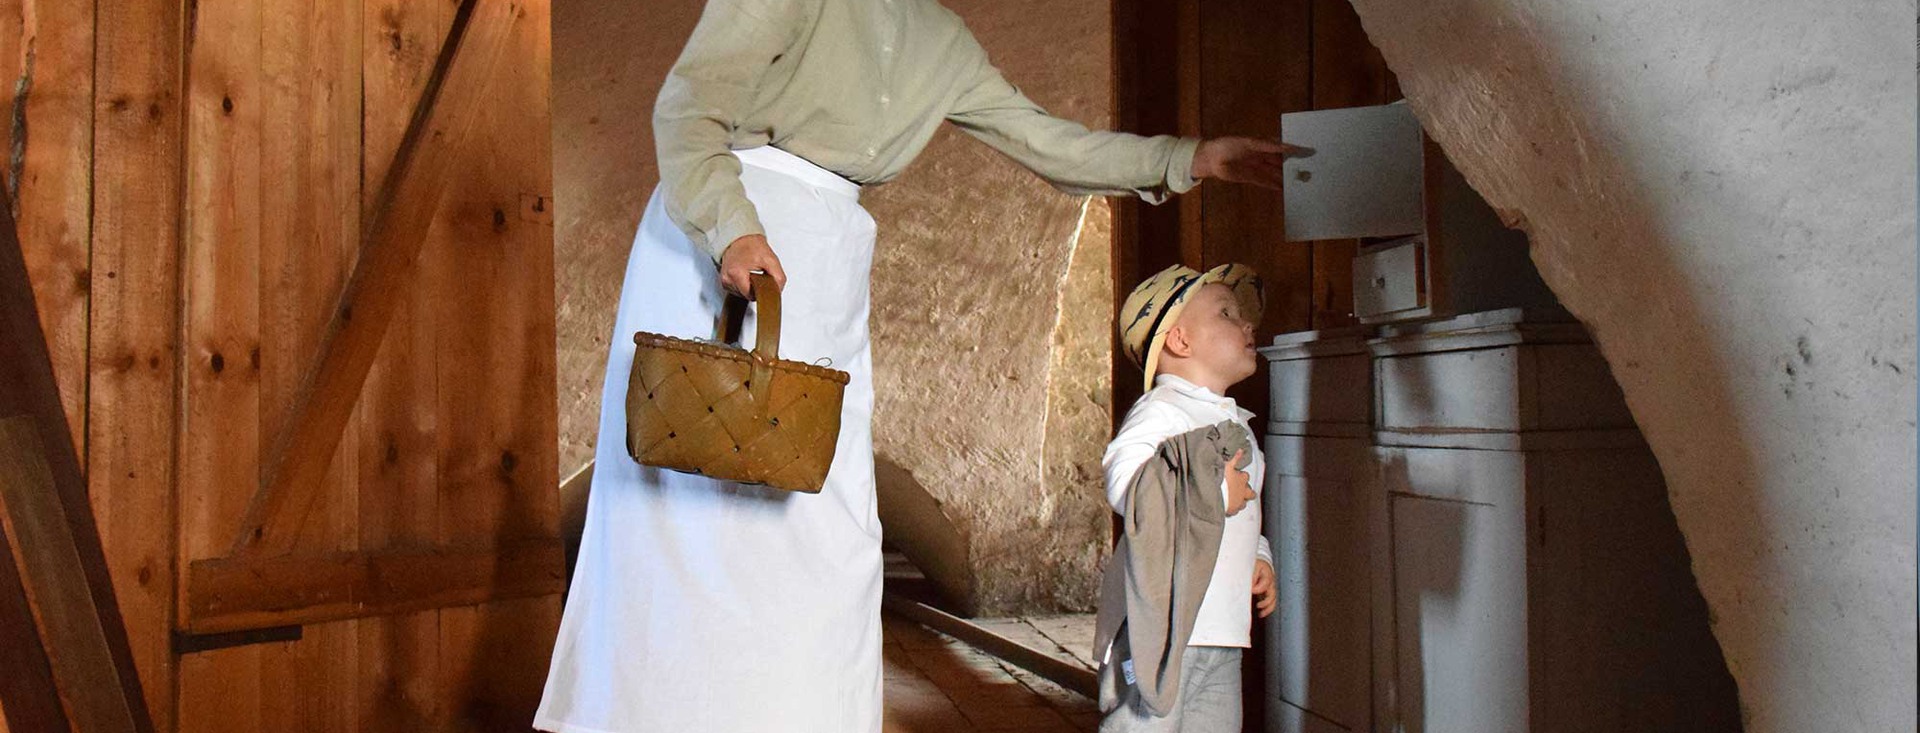 Ett litet barn iklädd stråhatt blir visad ett skåp av en traditionellt klädd person som håller en korg.